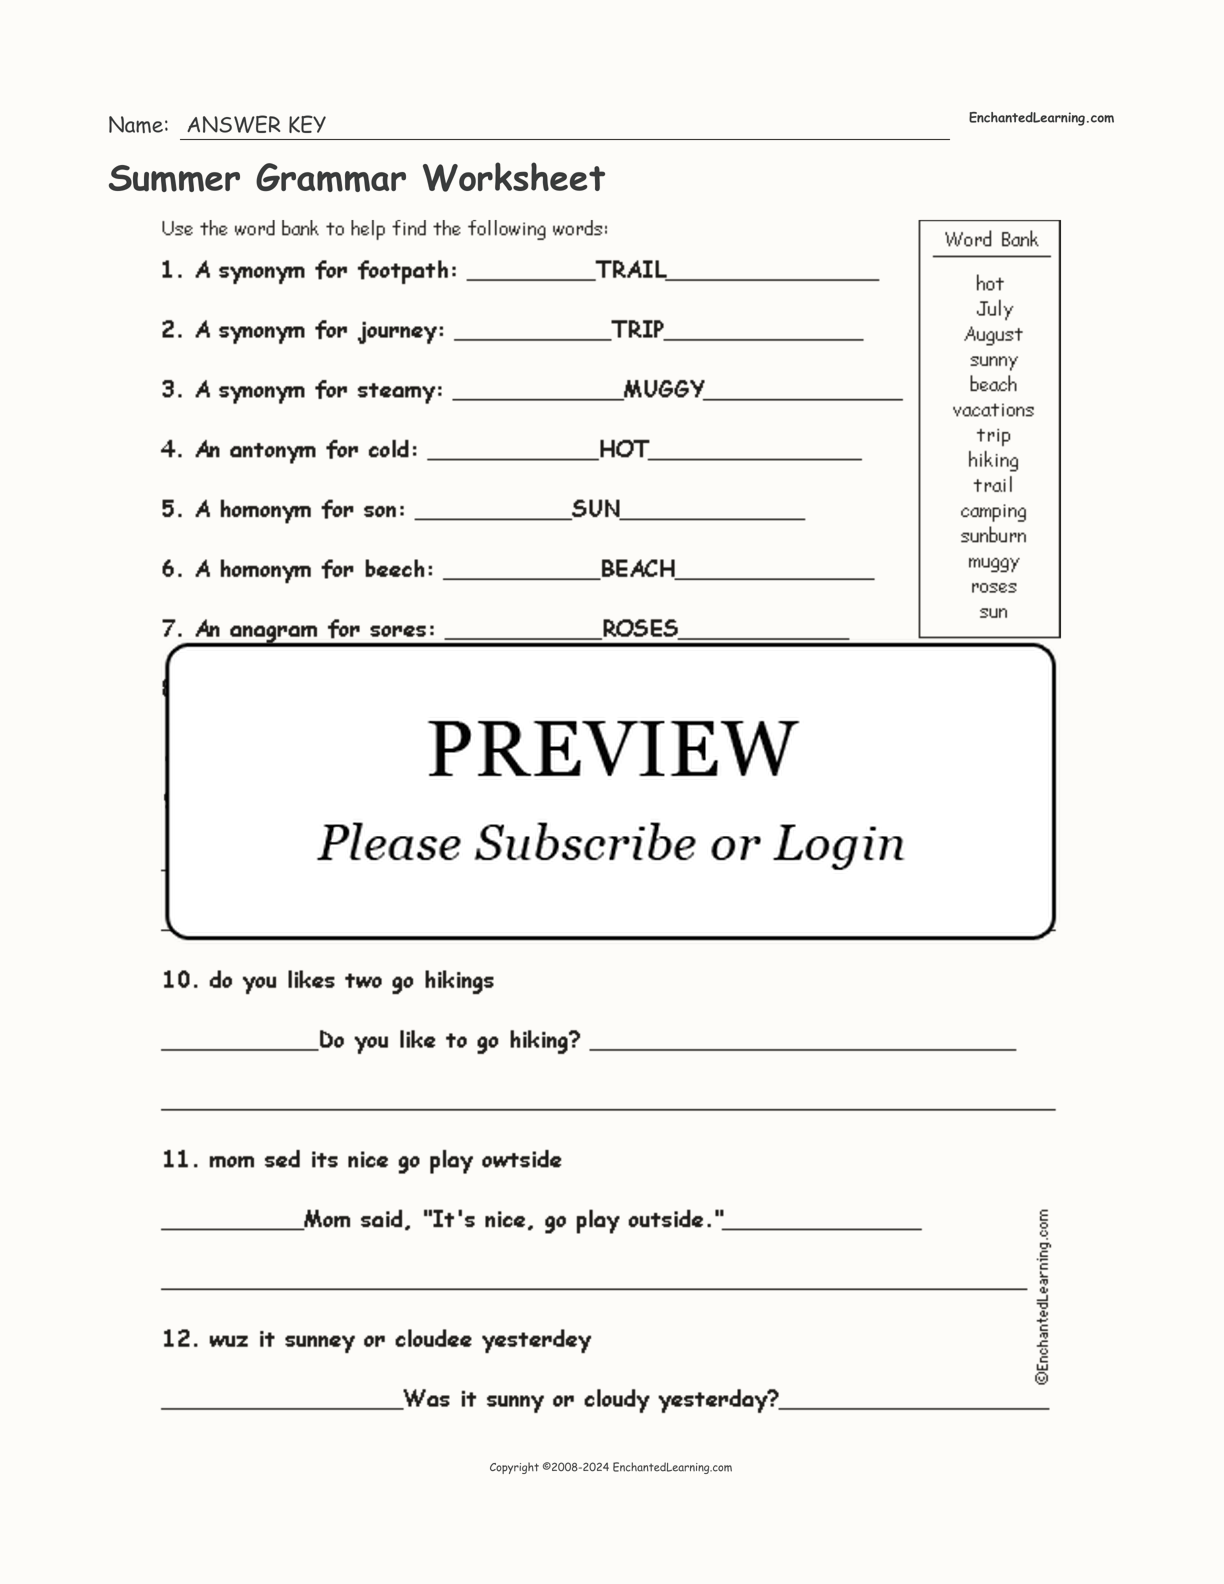 Summer Grammar Worksheet interactive worksheet page 2